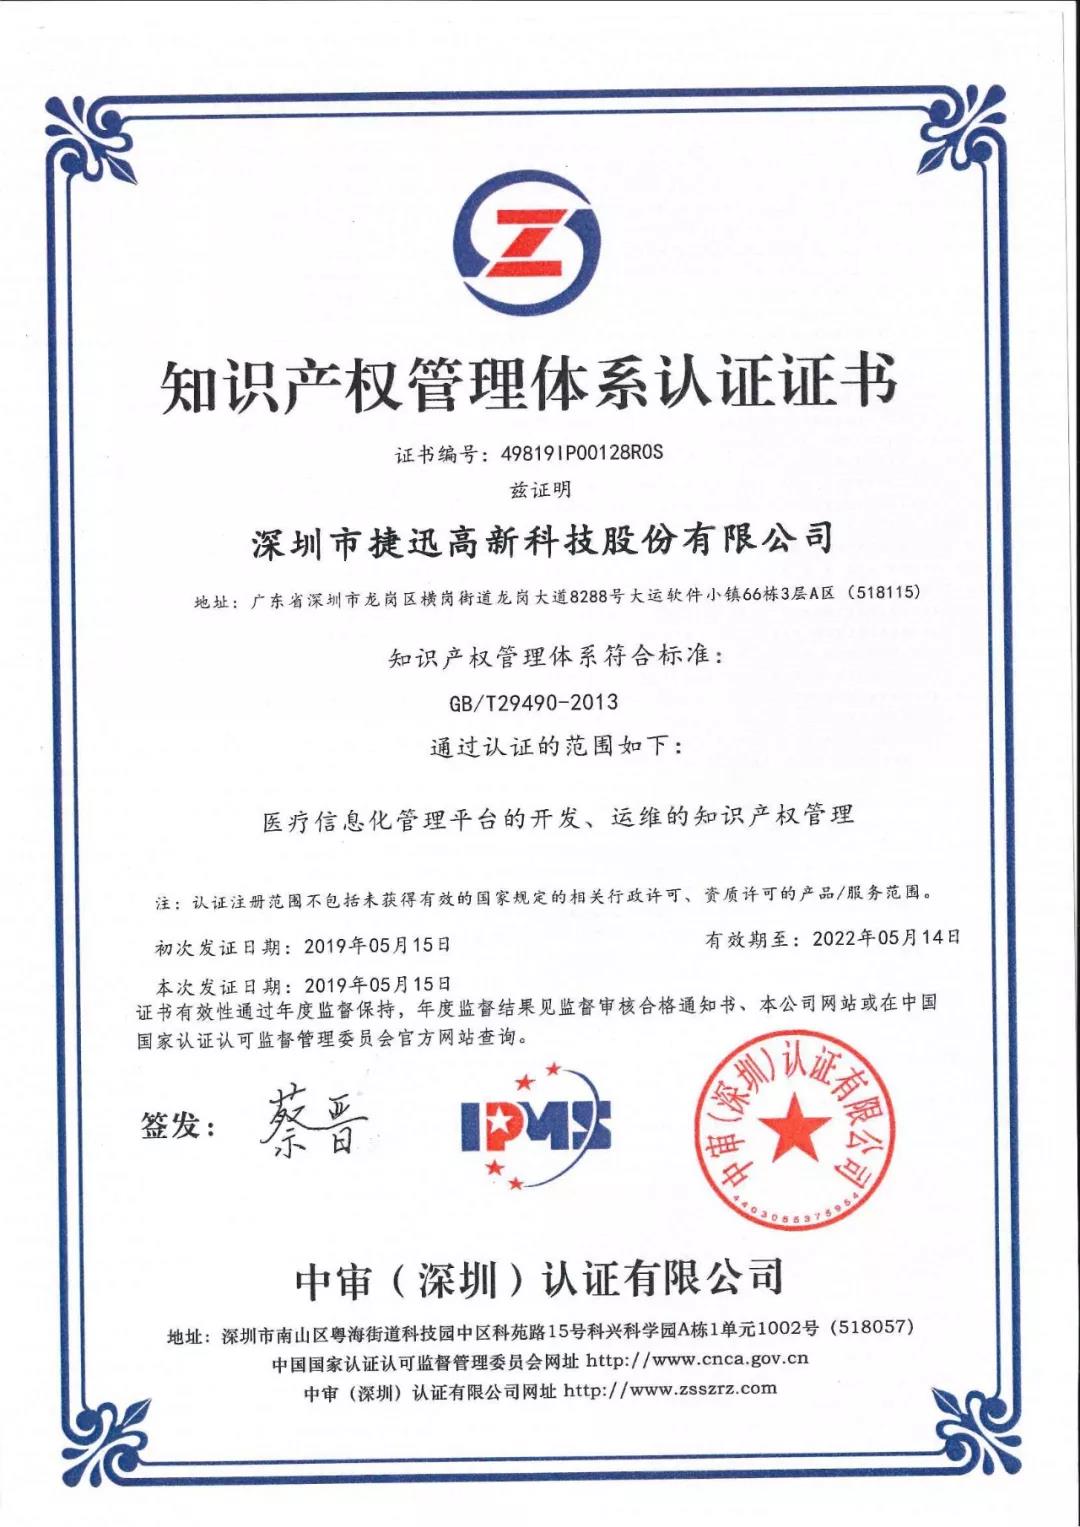 恭贺!捷迅科技医号馆荣获国家级知识产权管理体系认证证书!